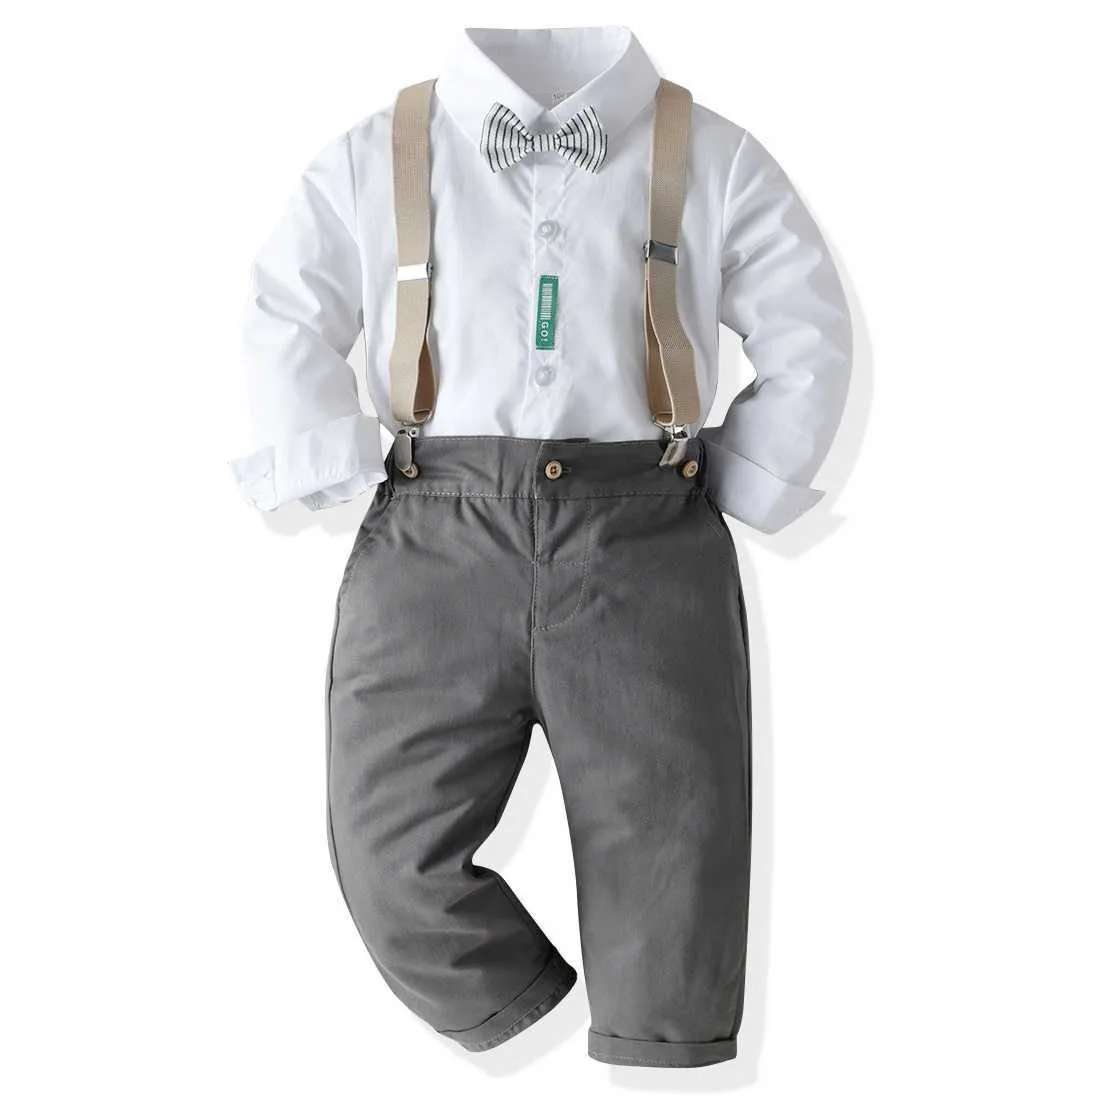 2021 Ensembles de vêtements pour enfants à la mode Chemise blanche Vêtements formelsBoutique Vêtements pour enfants Gentleman Costume Garçons Tenues Ropa De Bebe H1023